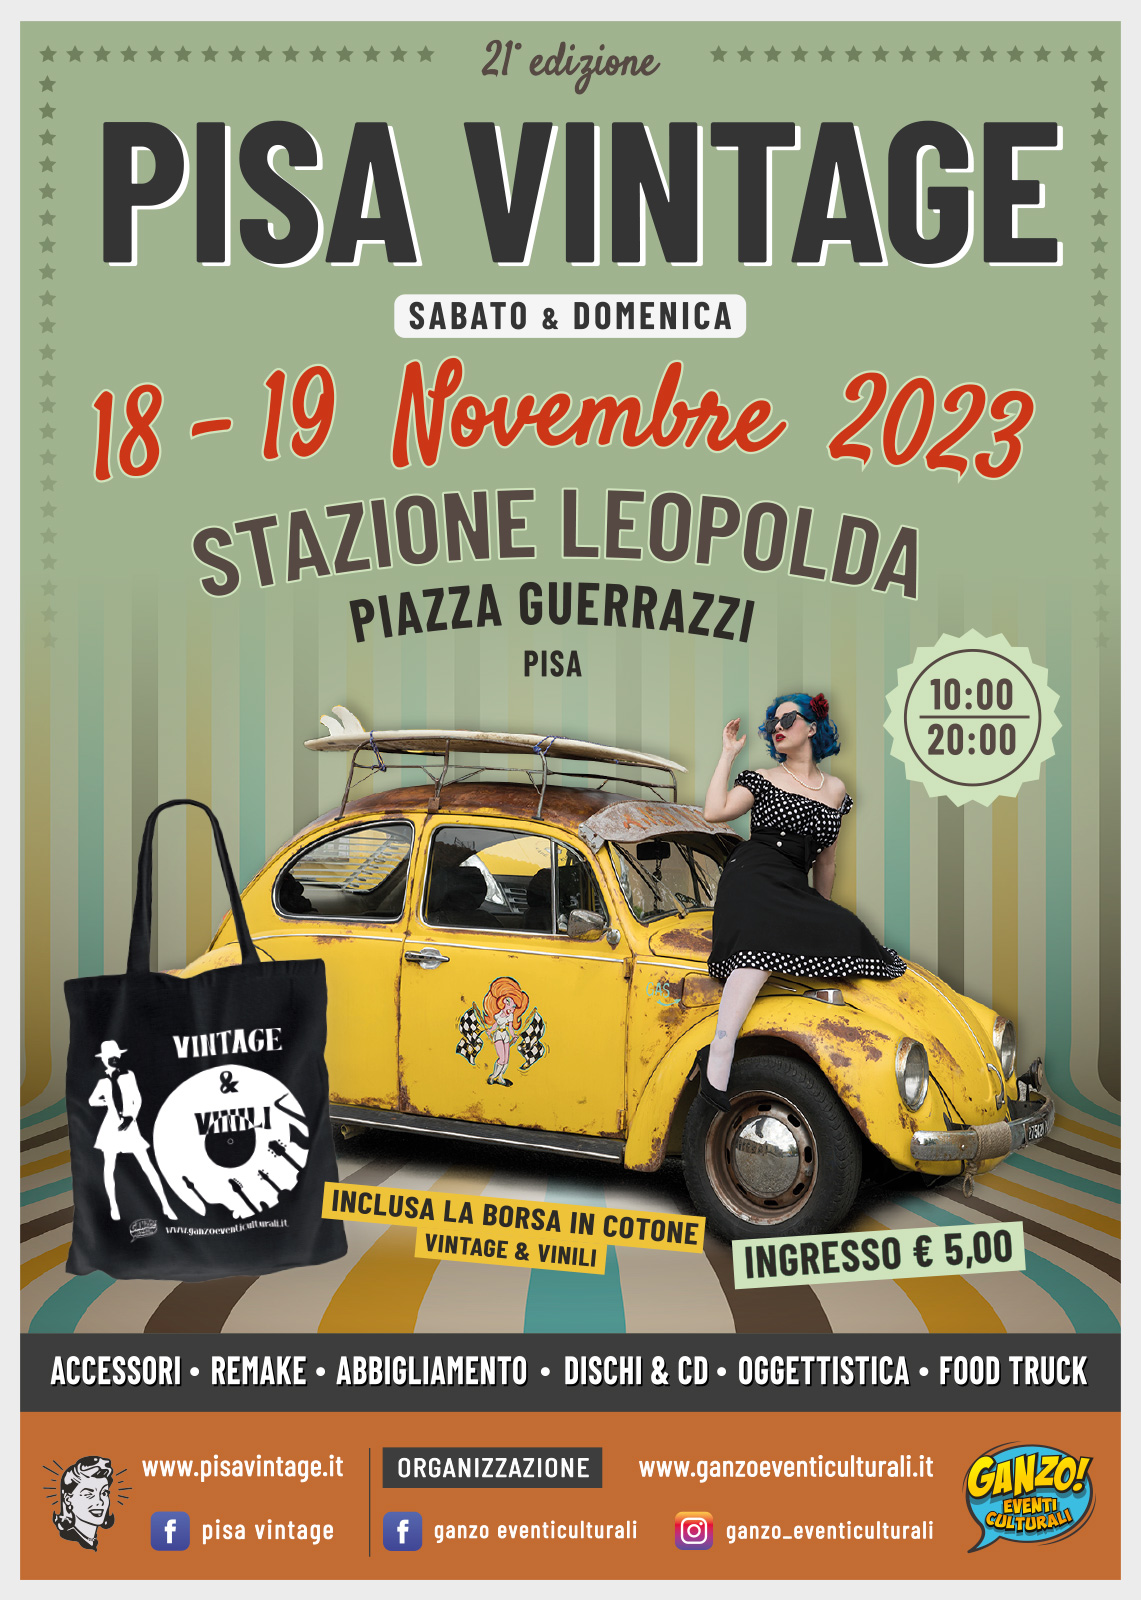 Pisa Vintage - 21 edizione - 18-19 Novembre 2023